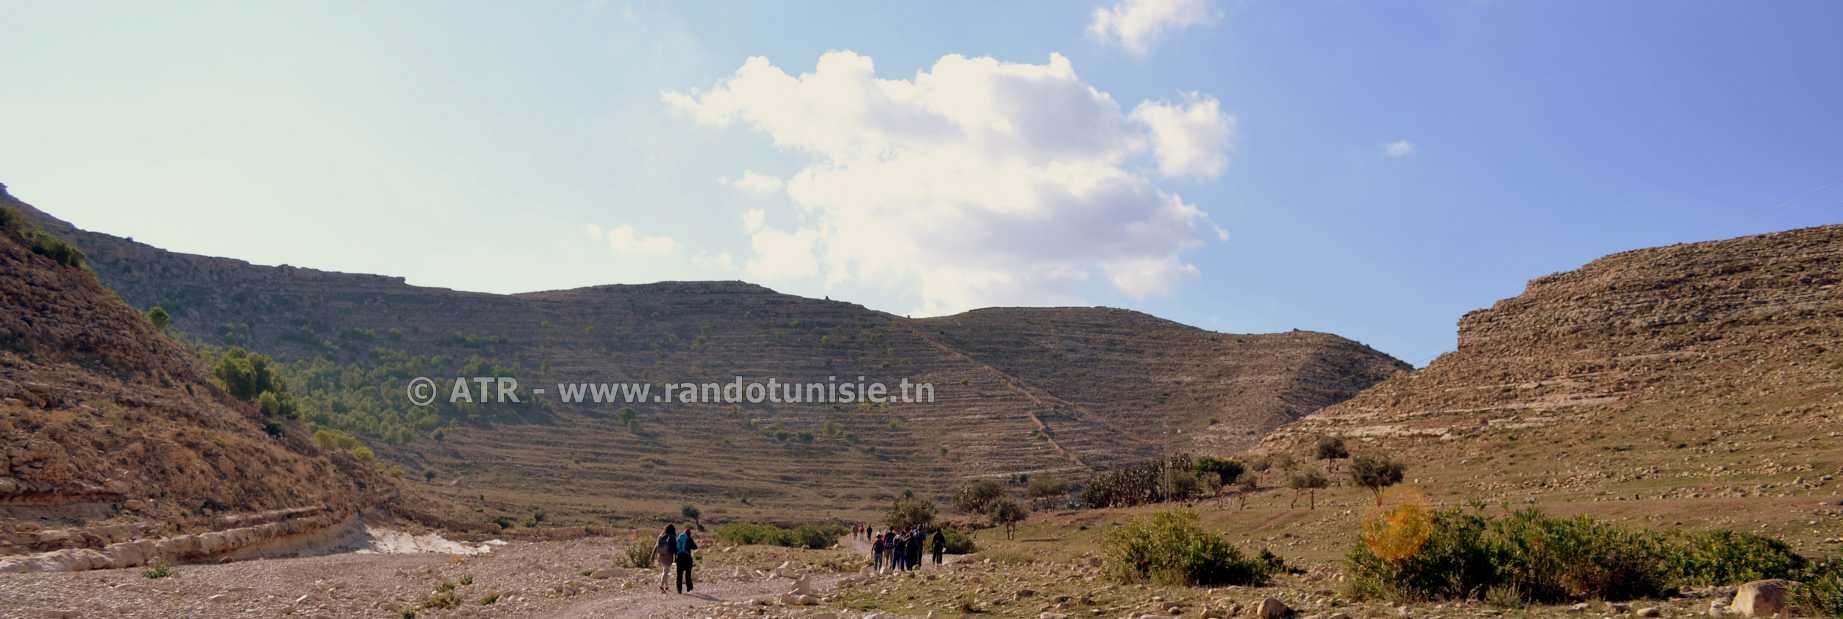 Randonnée à Ain Khanfous Oueslatia - paysage